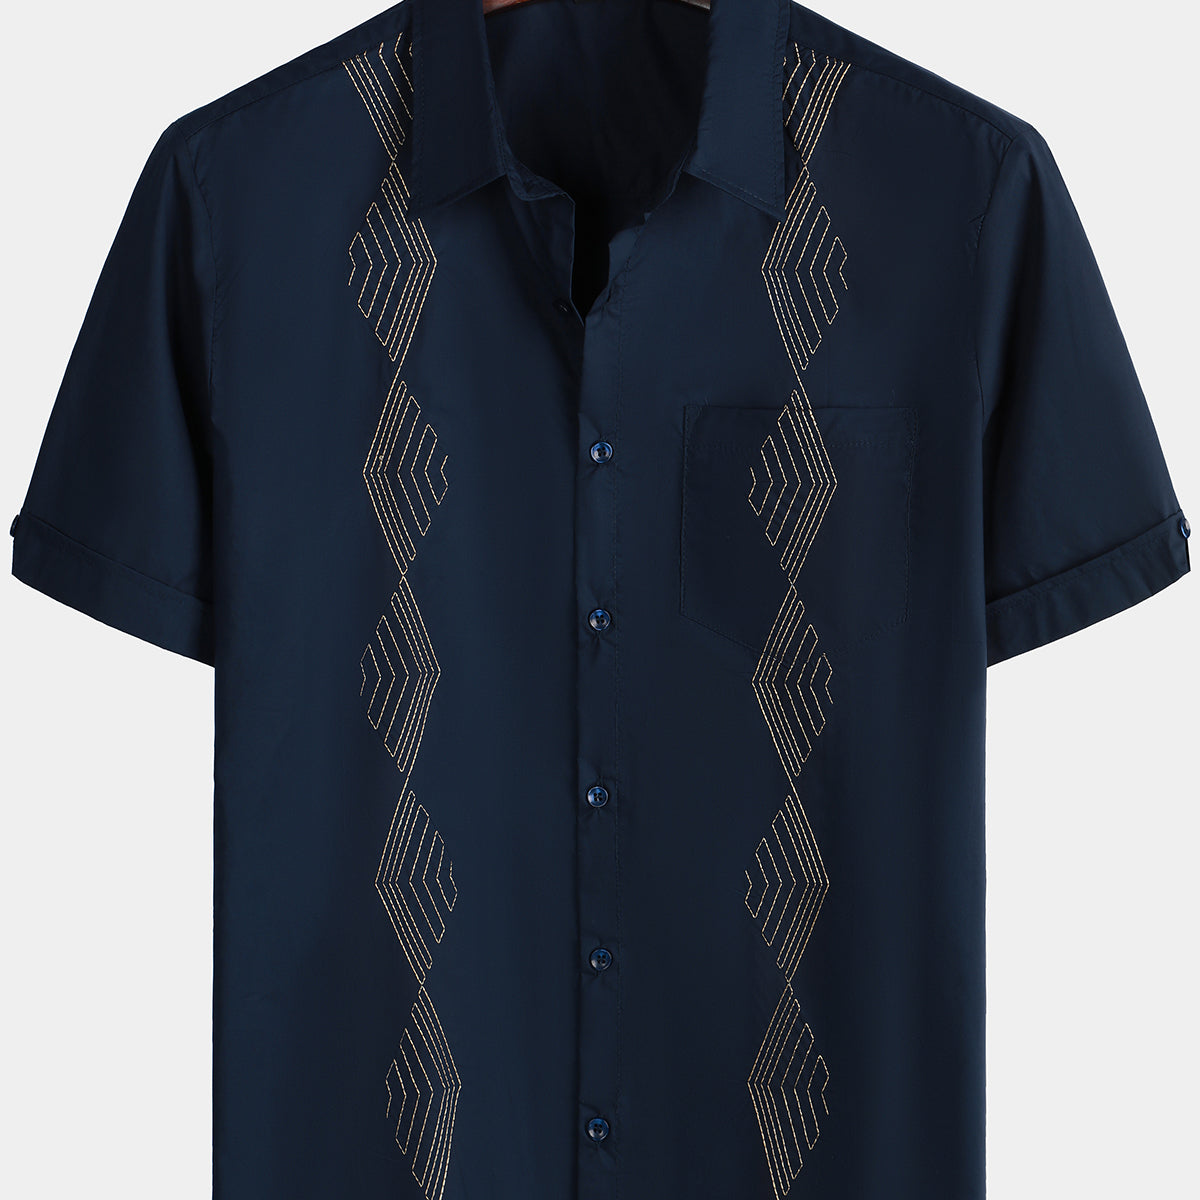 Men's Guayabera Embroidered Geometric Pocket Summer Button Up Short Sleeve Beach Shirt